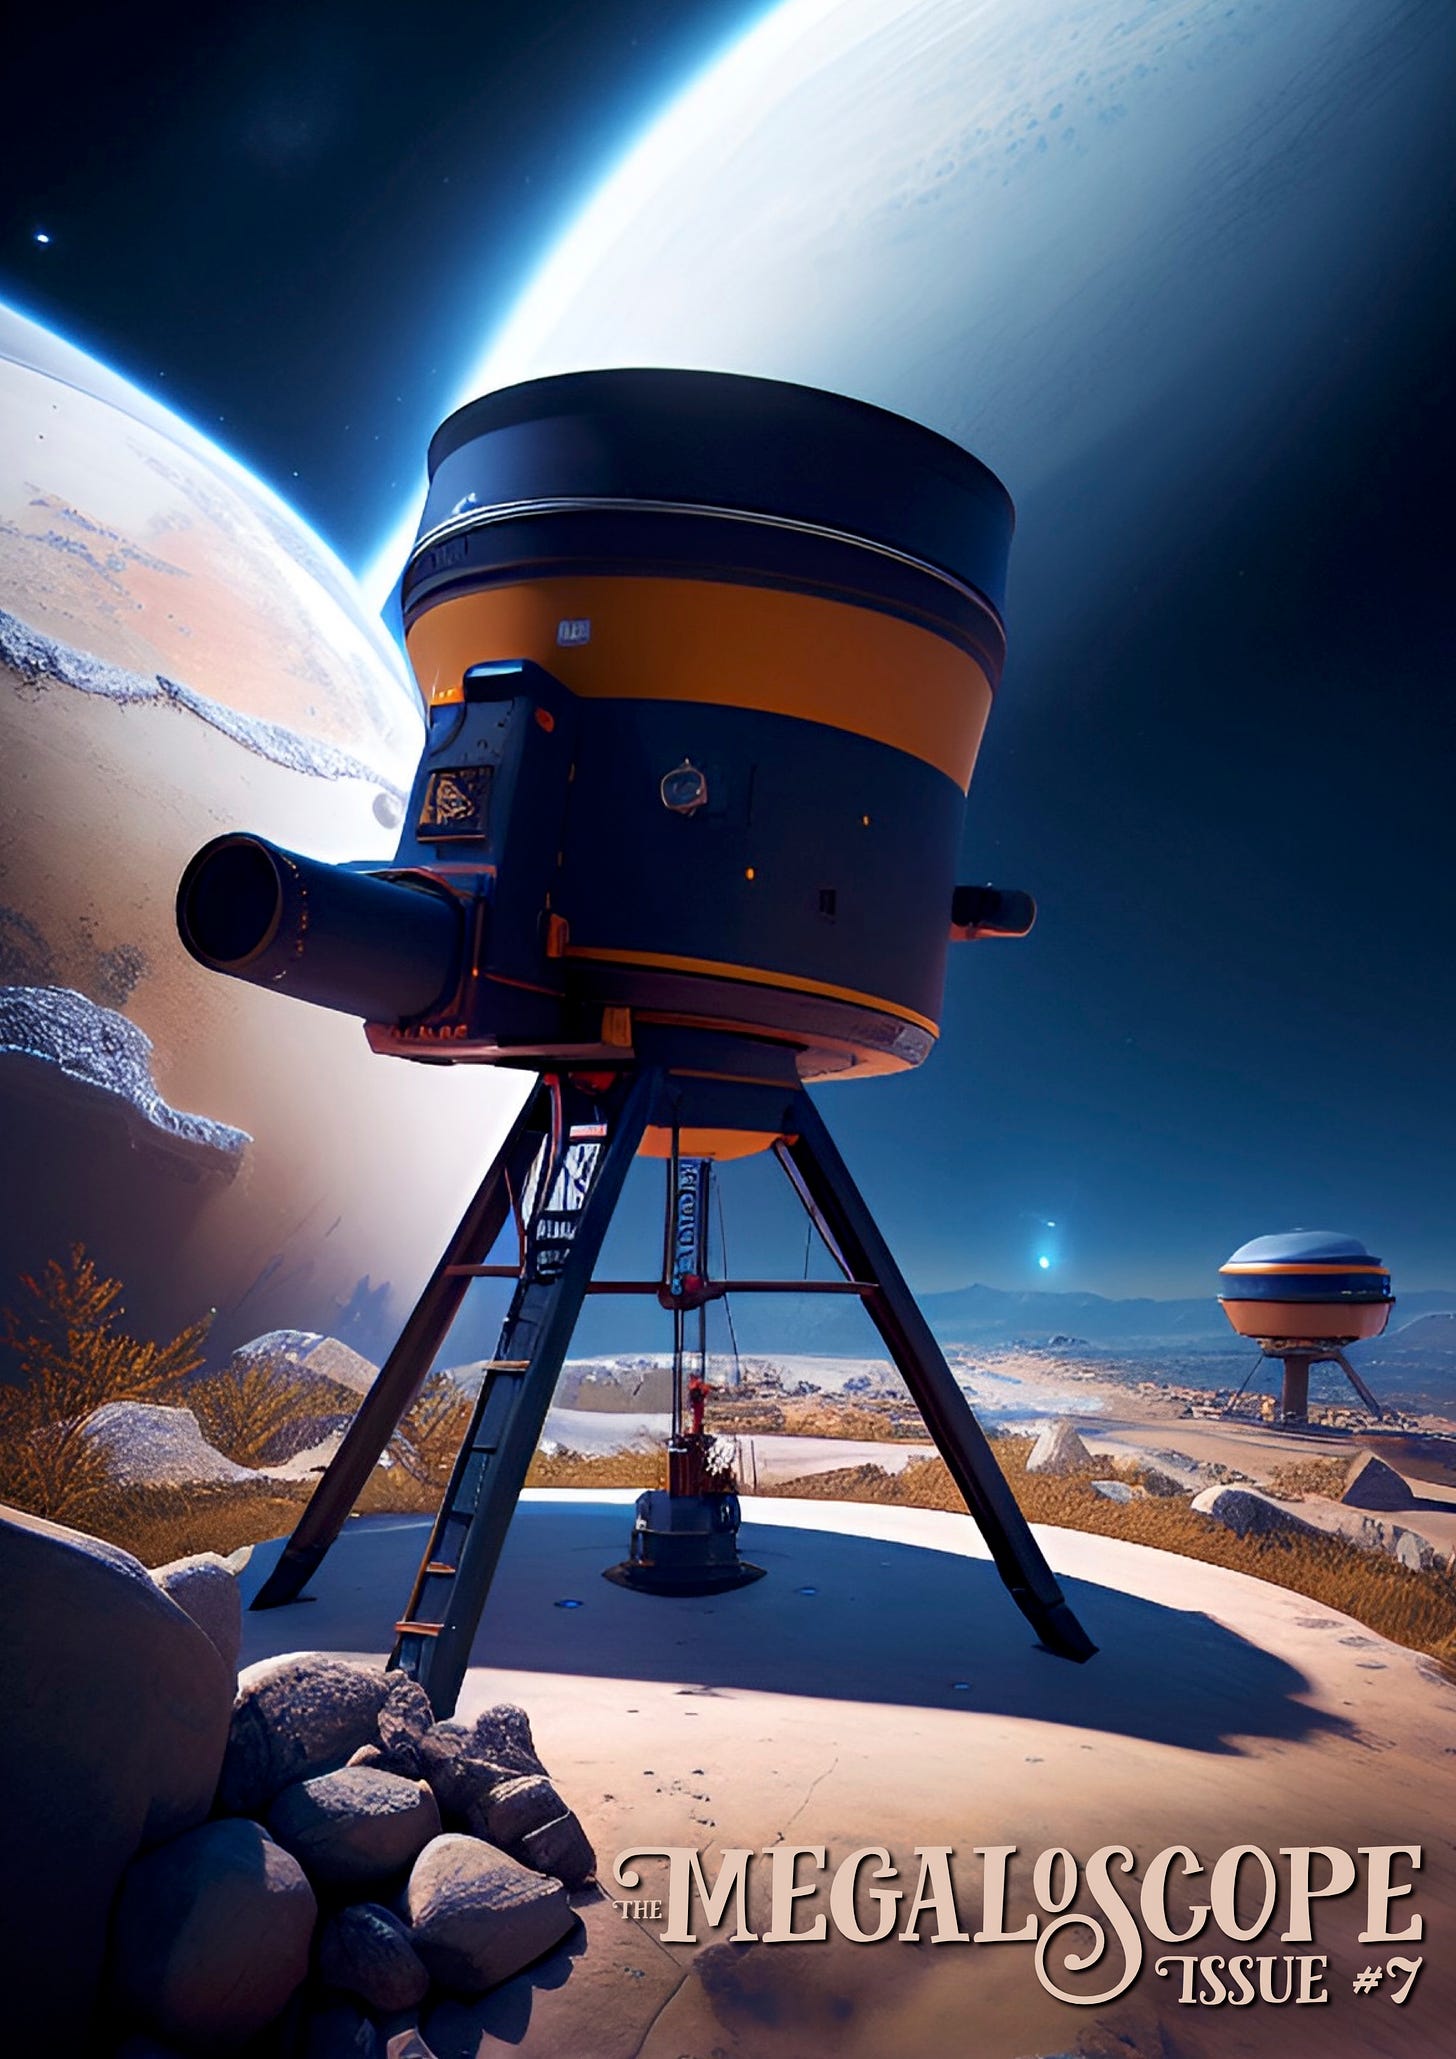 A huge telescope set in an alien landscape